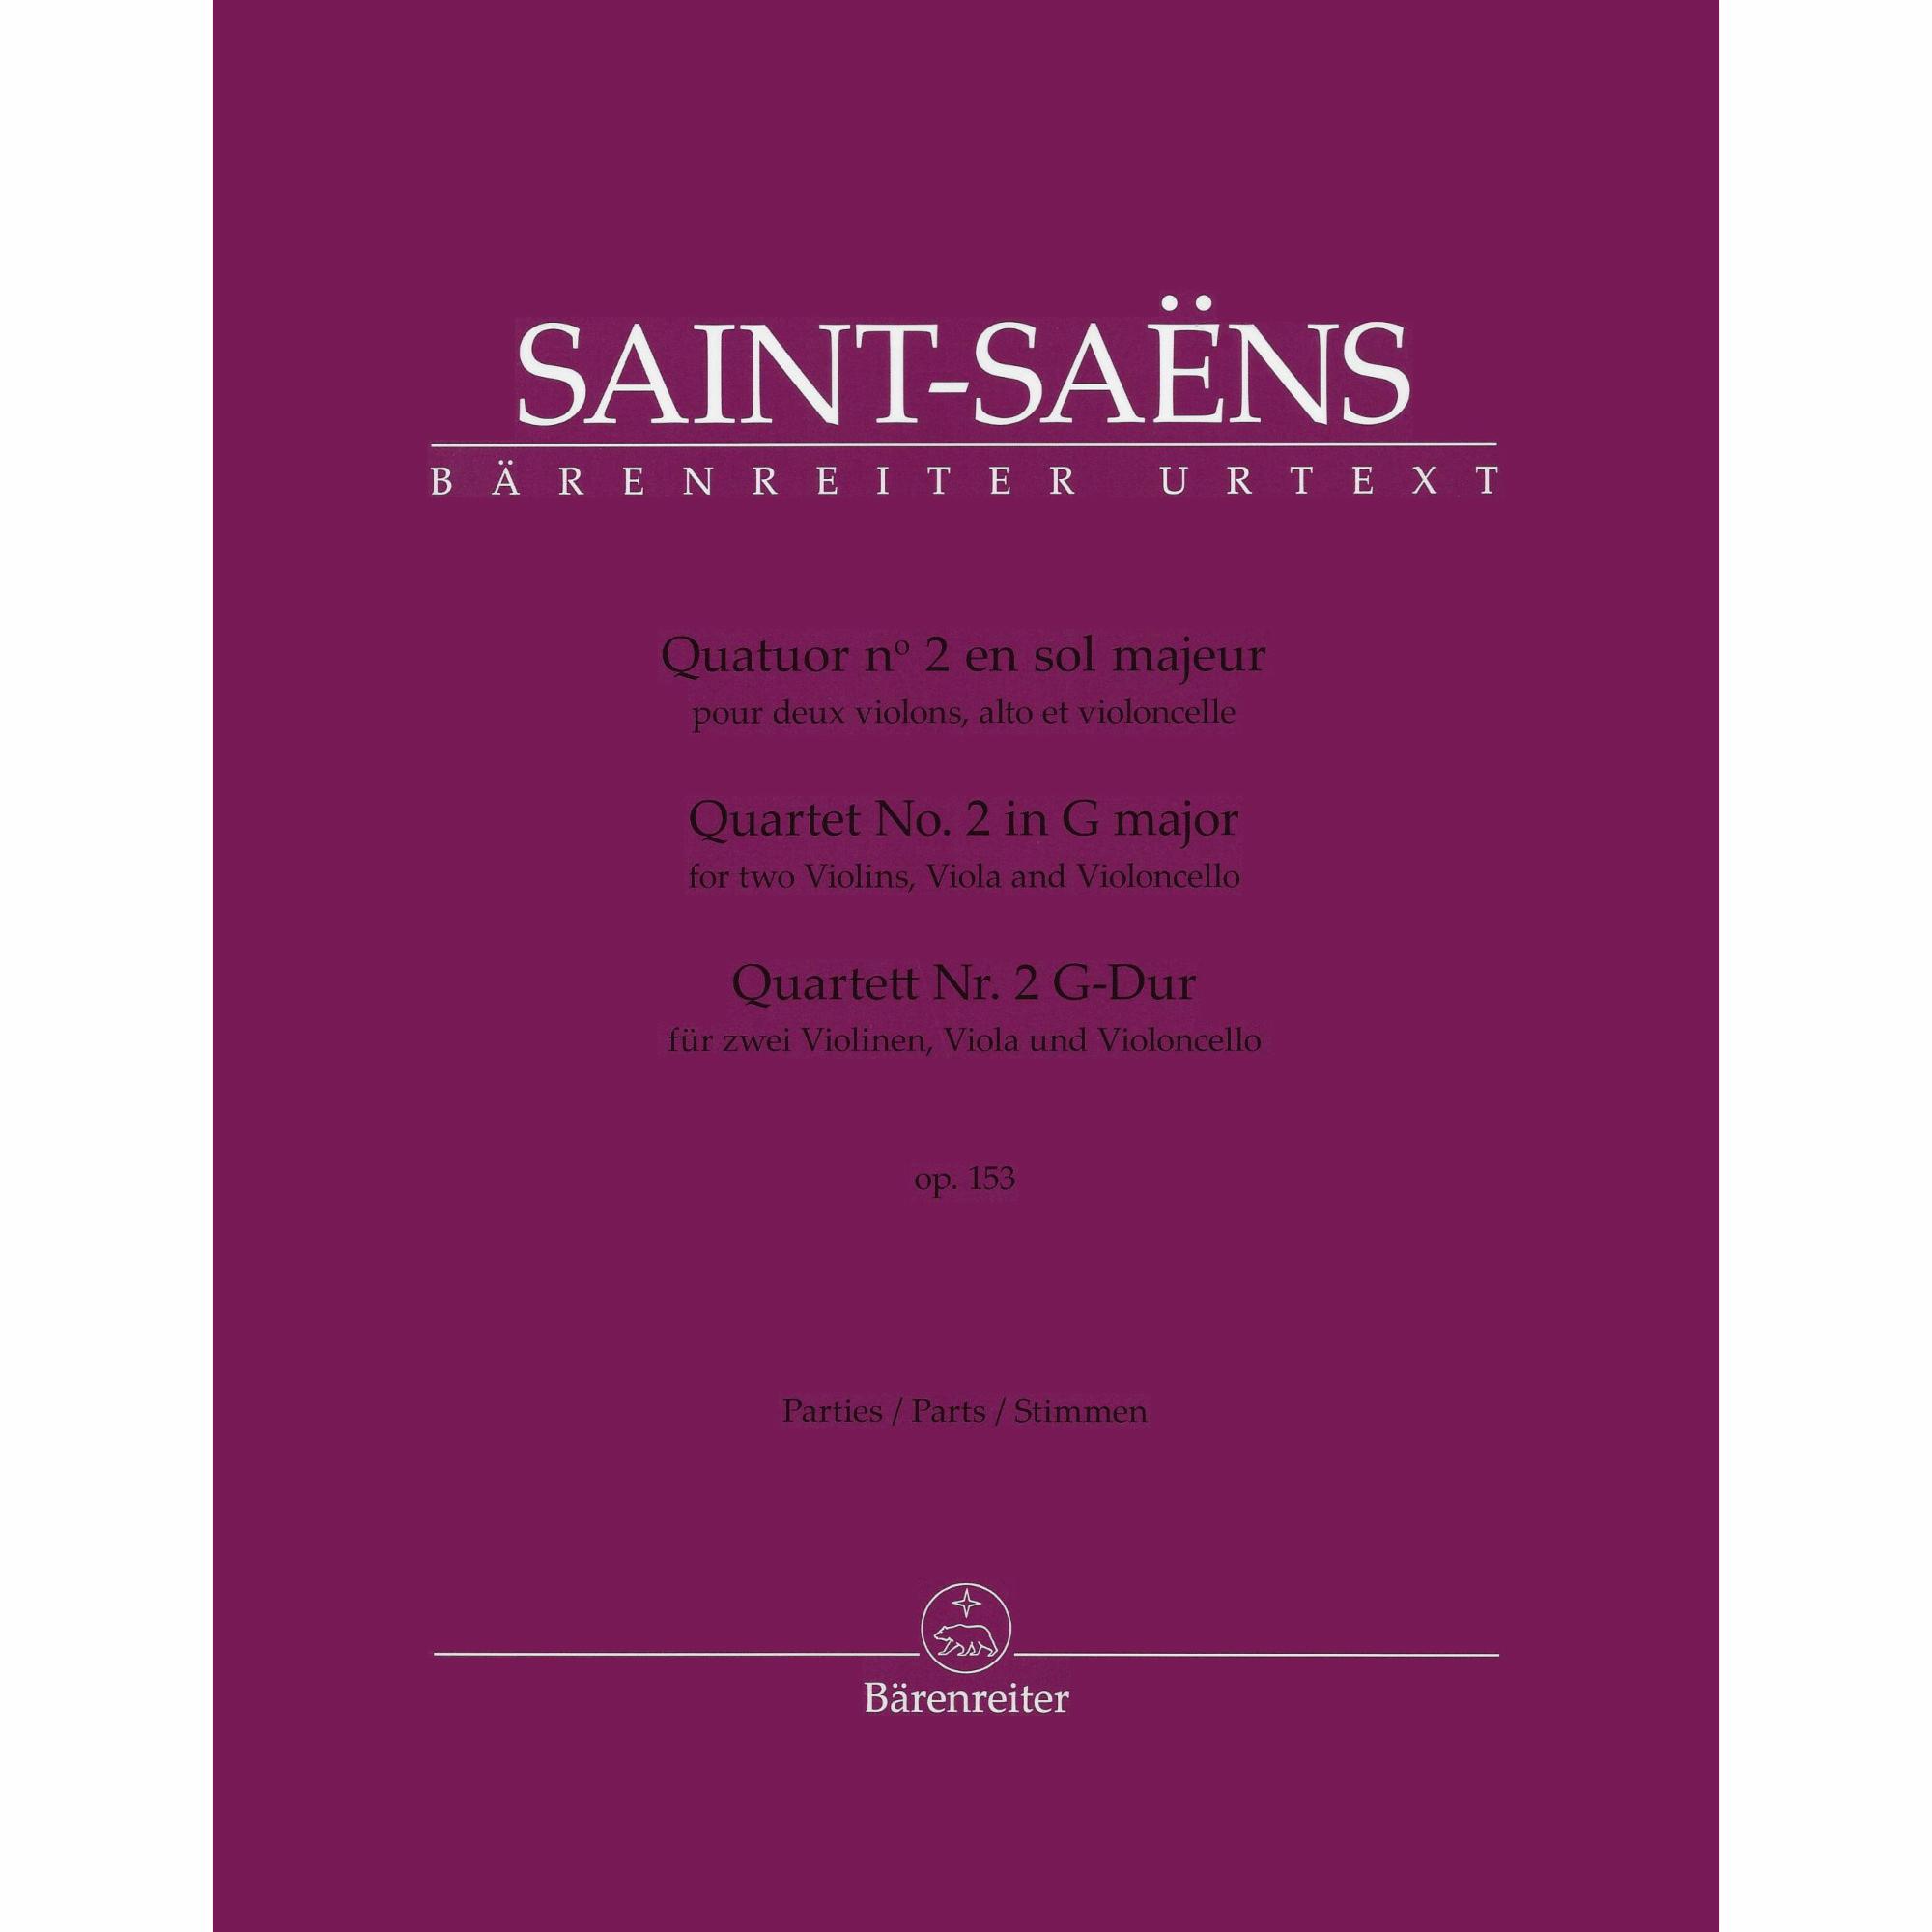 Saint-Saens -- String Quartet No. 2 in G Major, Op. 153